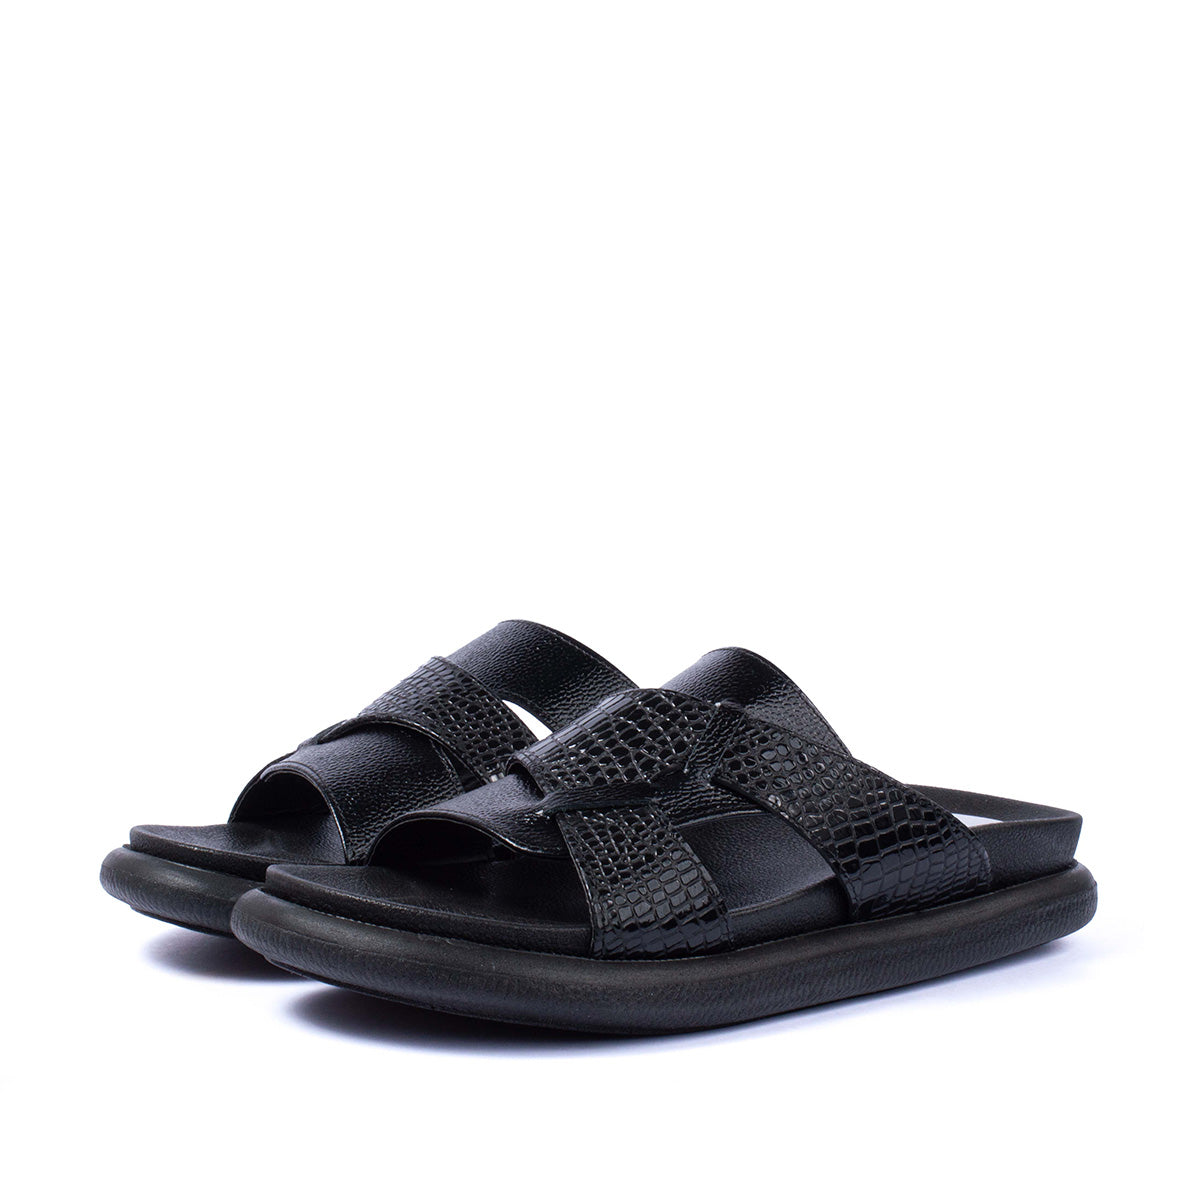 Sandalias planas en cuero color negro con textura tipo croco 104073